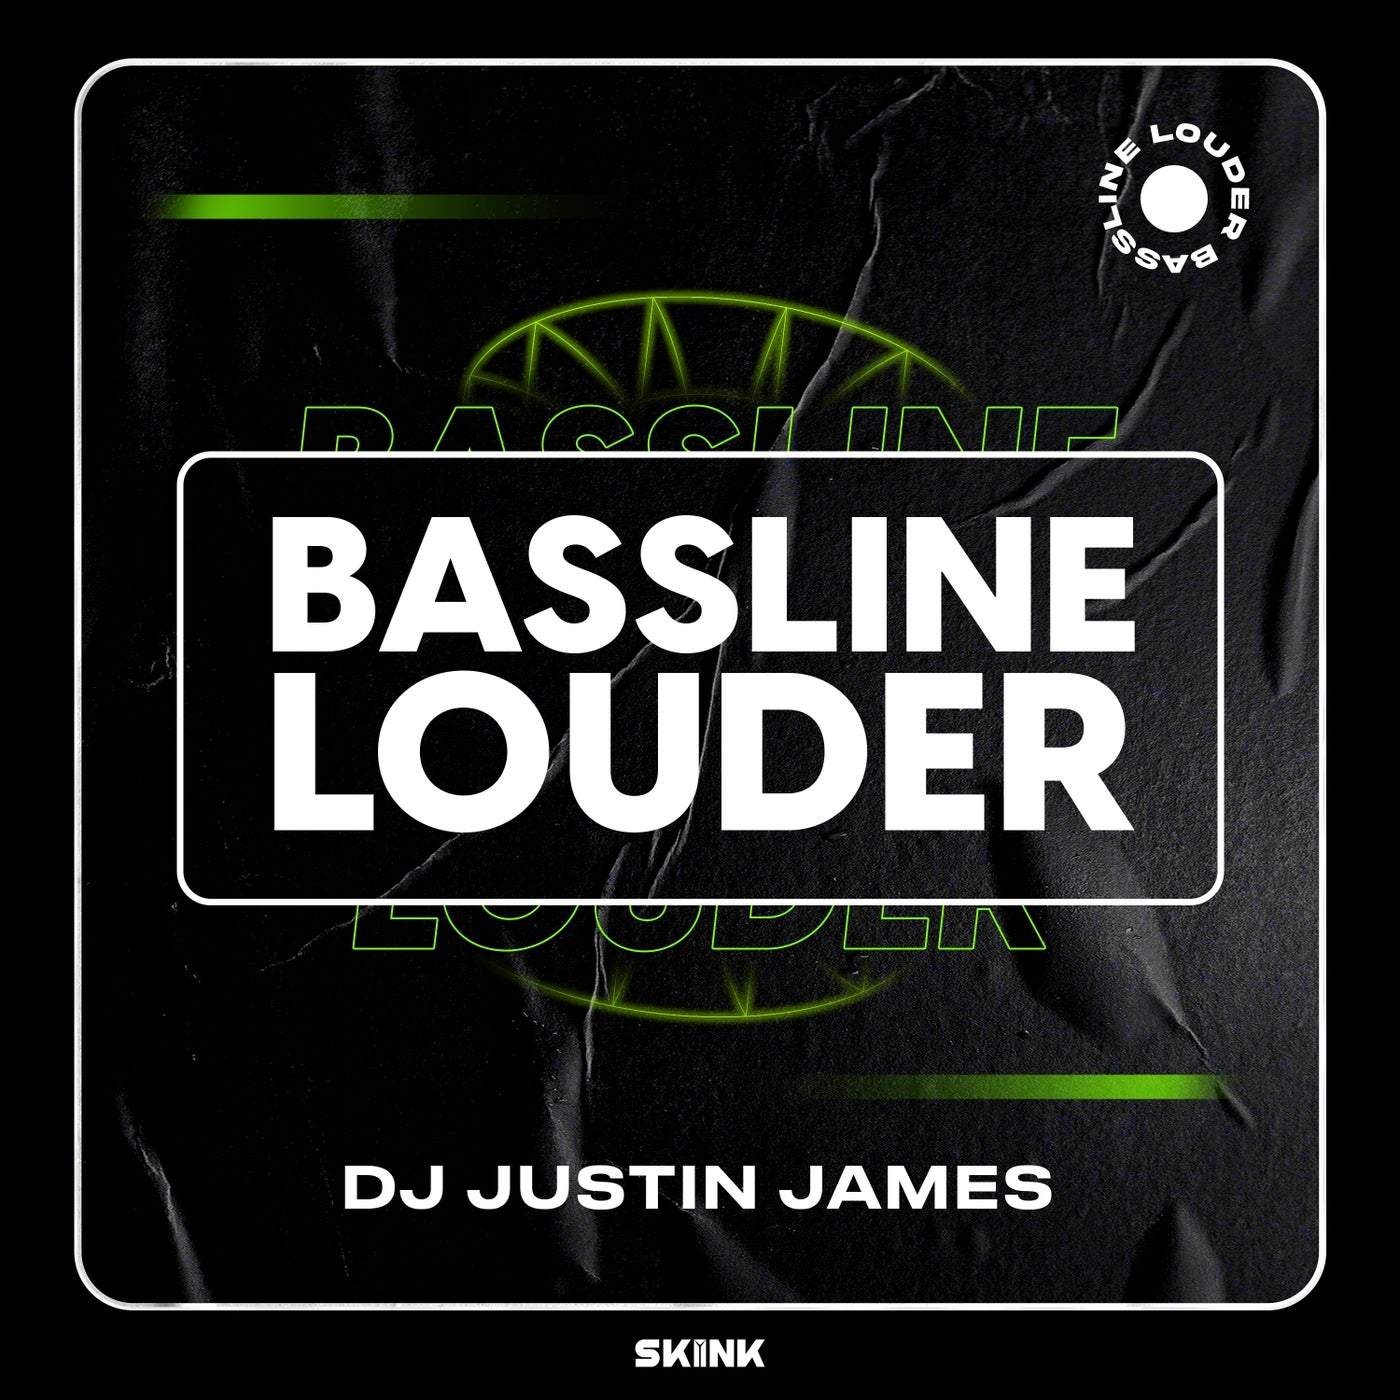 image cover: Bassline Louder by DJ Justin James on Skink